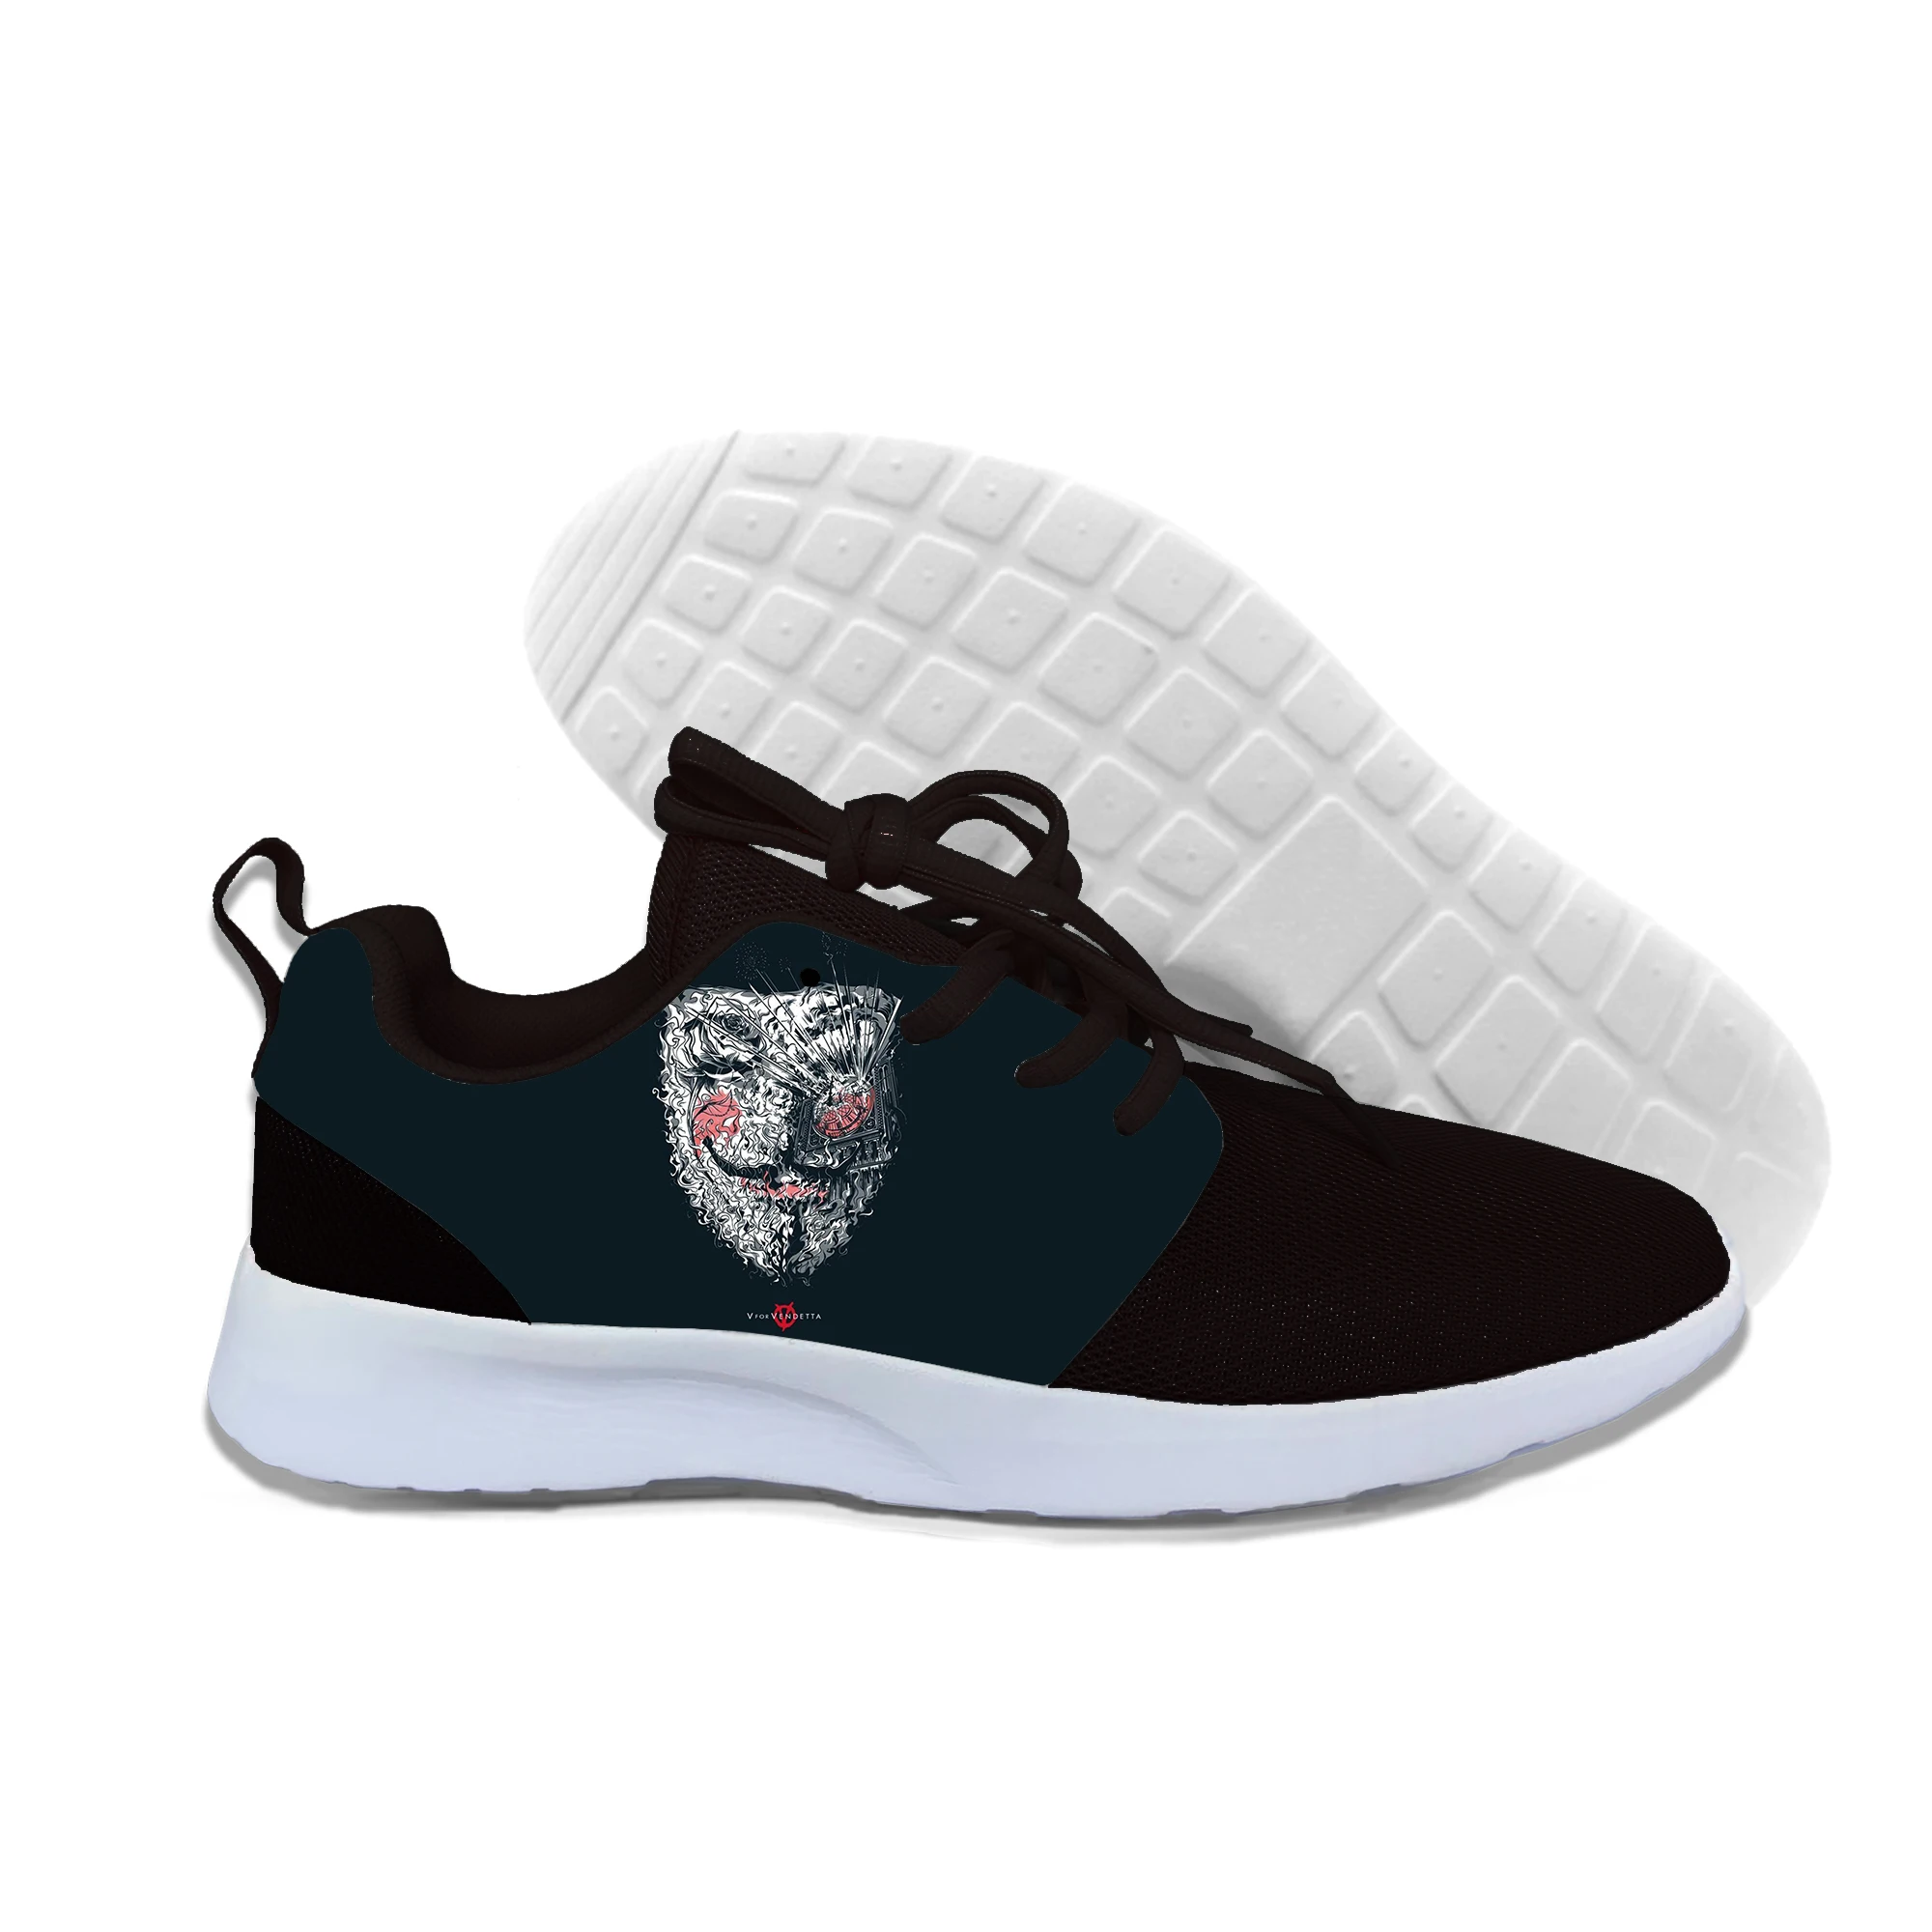 V for Vendetta/2019 г. Новые Летние Стильные мужские повседневные модные легкие туфли